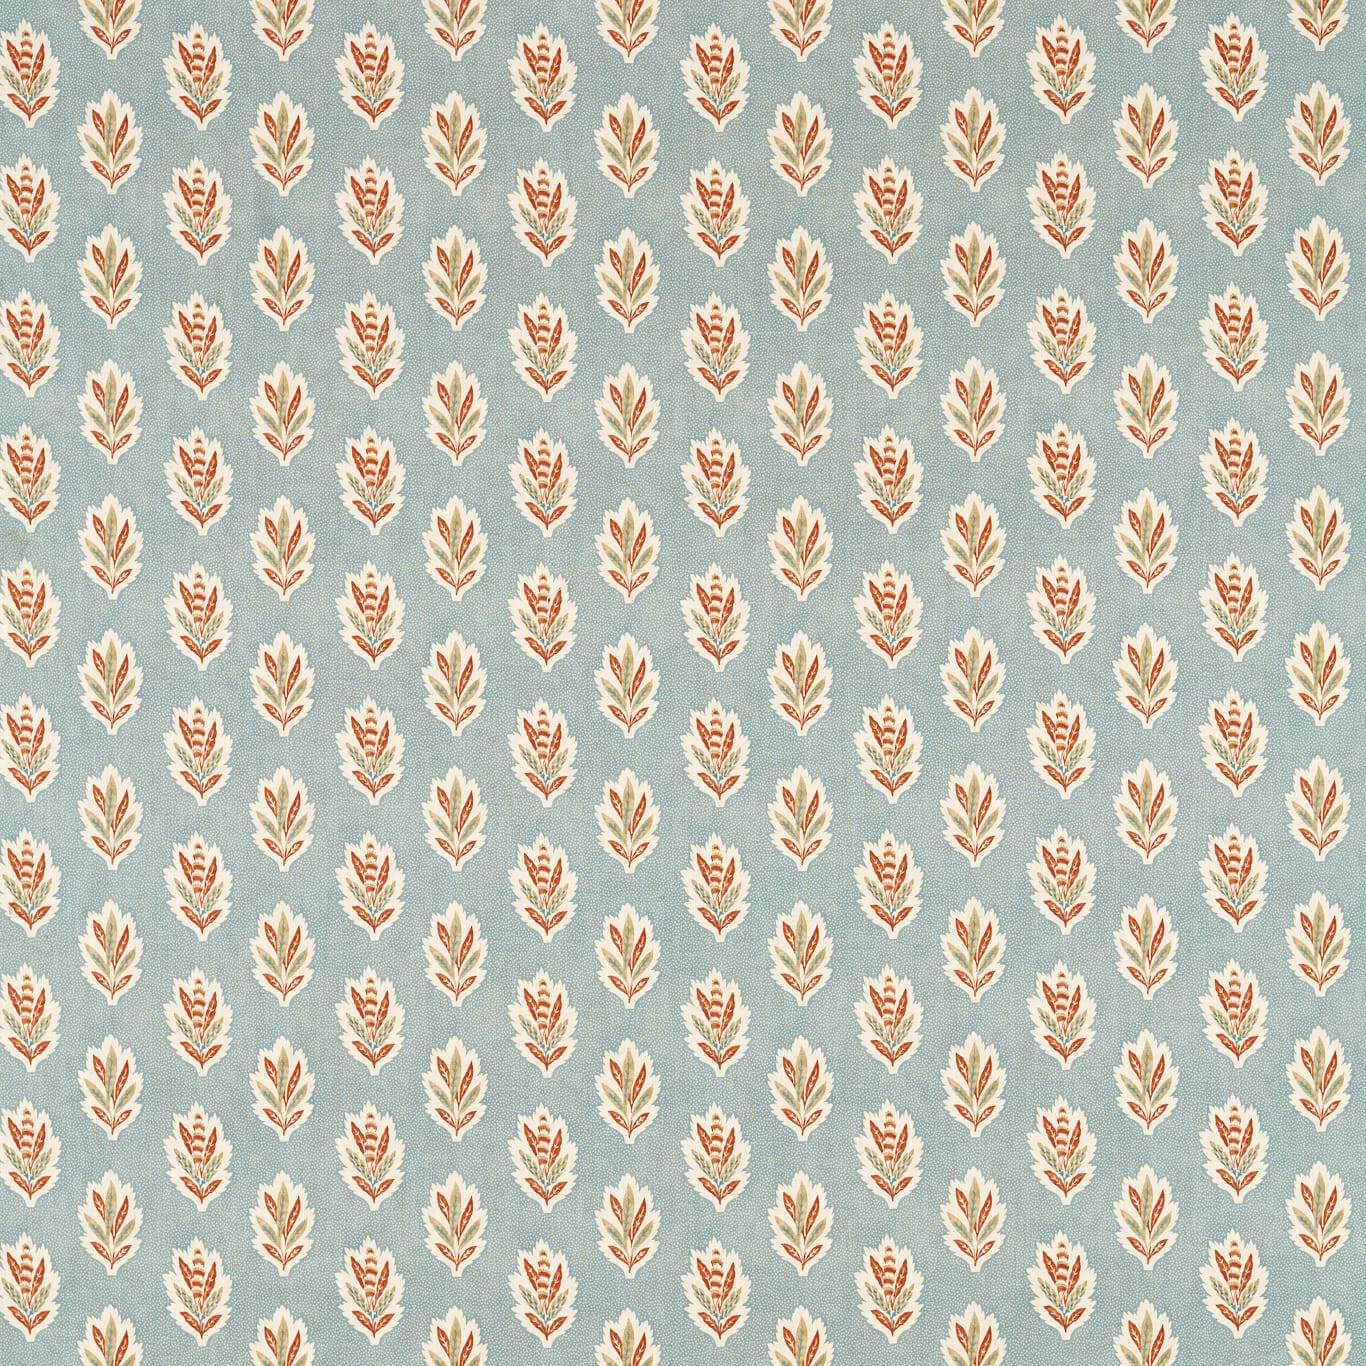 Sessile Leaf Fabric